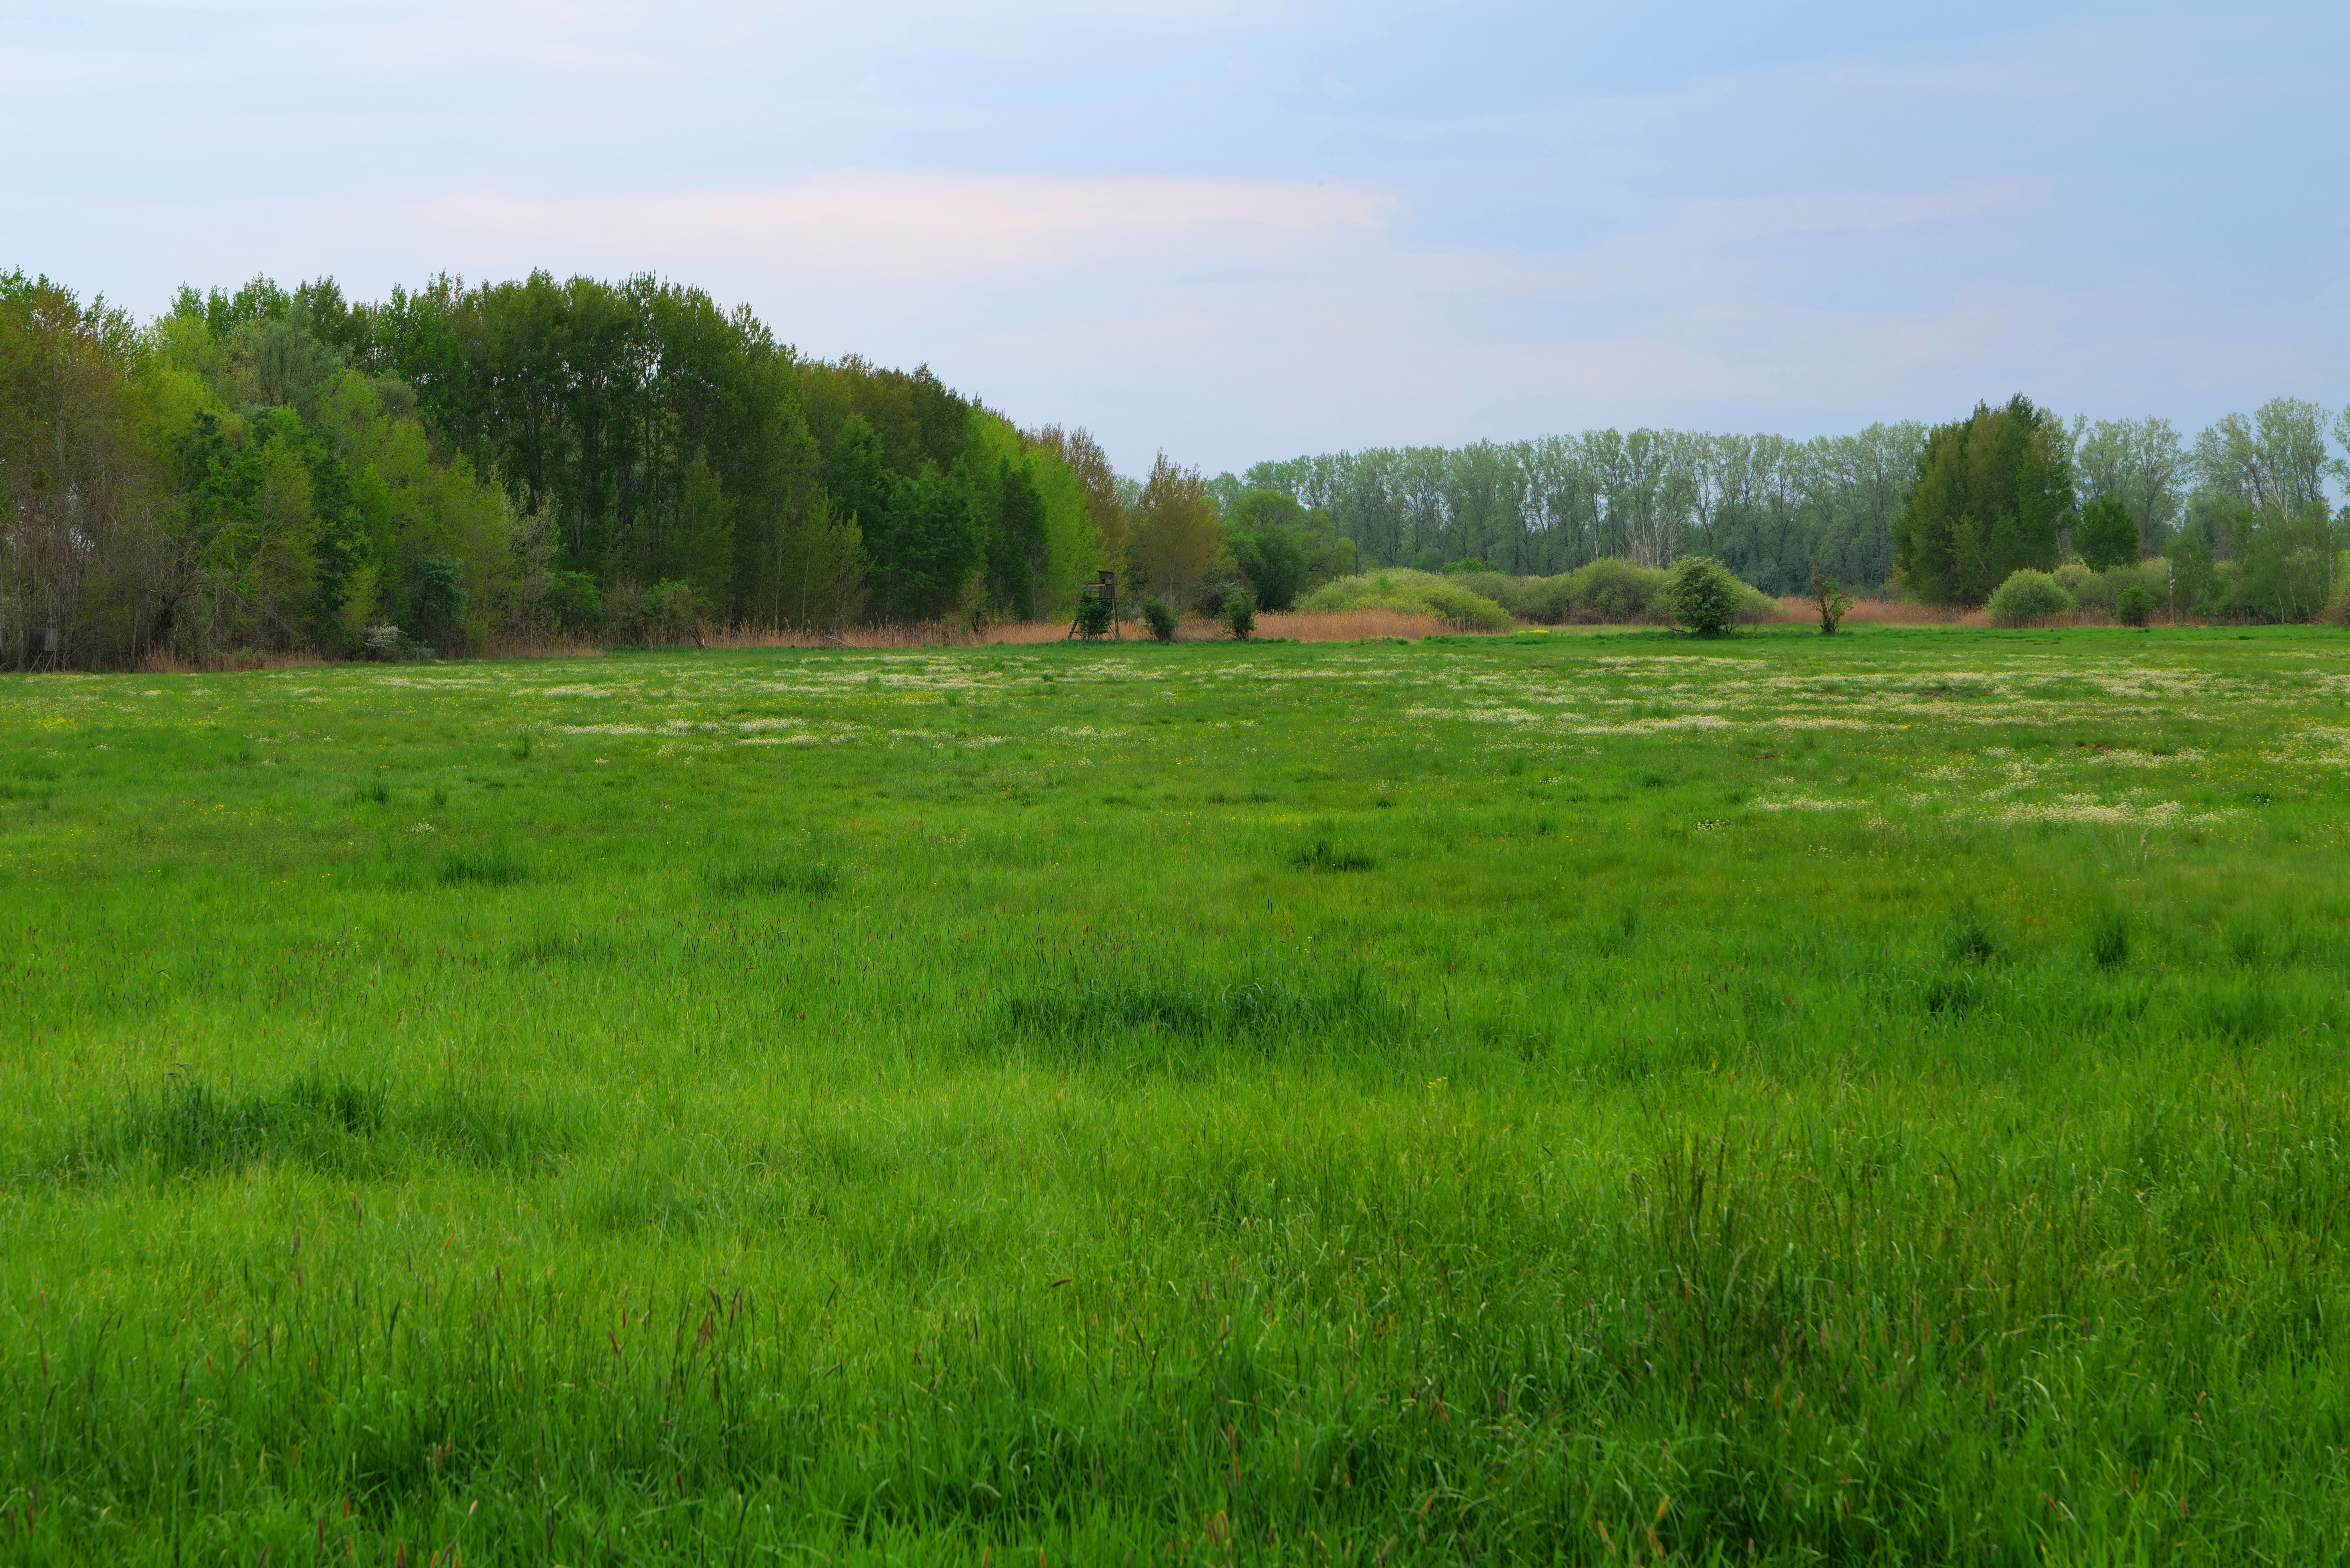 Kremmener Luch im Mai. Luch ist die Bezeichnung für eine ausgedehnte, vermoorte Niederung, besonders in Brandenburg. Luche sind vor allem in Jungmoränengebieten zu finden, seltener in der Altmoränenlandschaft.